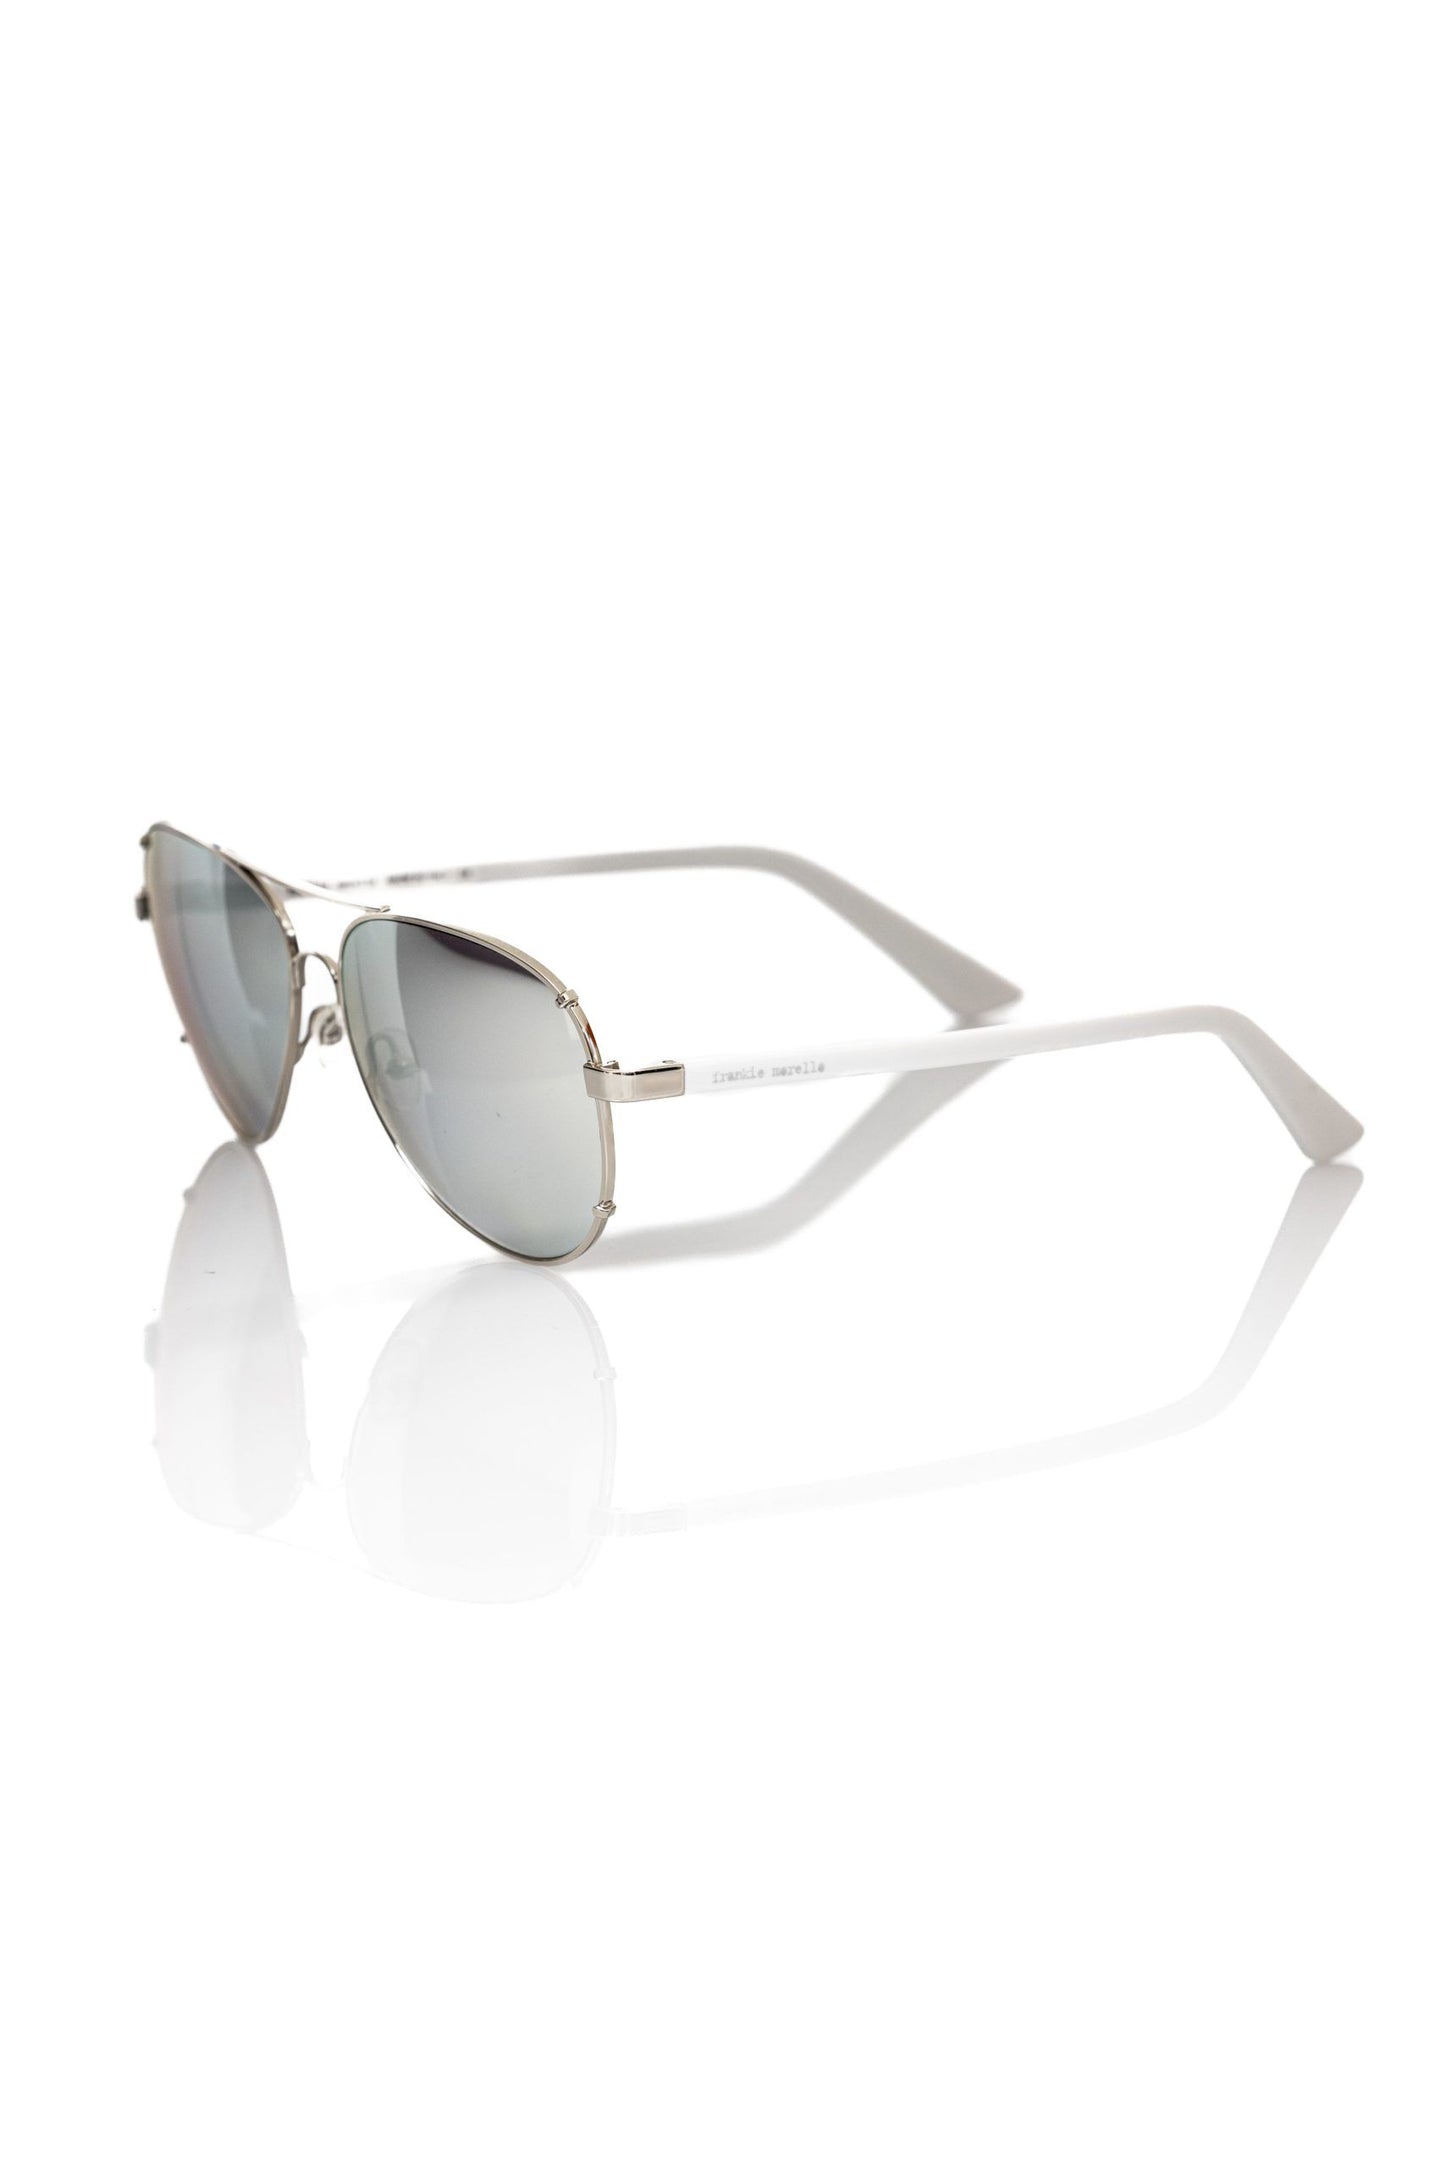 Frankie Morello FRMO-22121 Silver Metallic Fibre Sunglasses